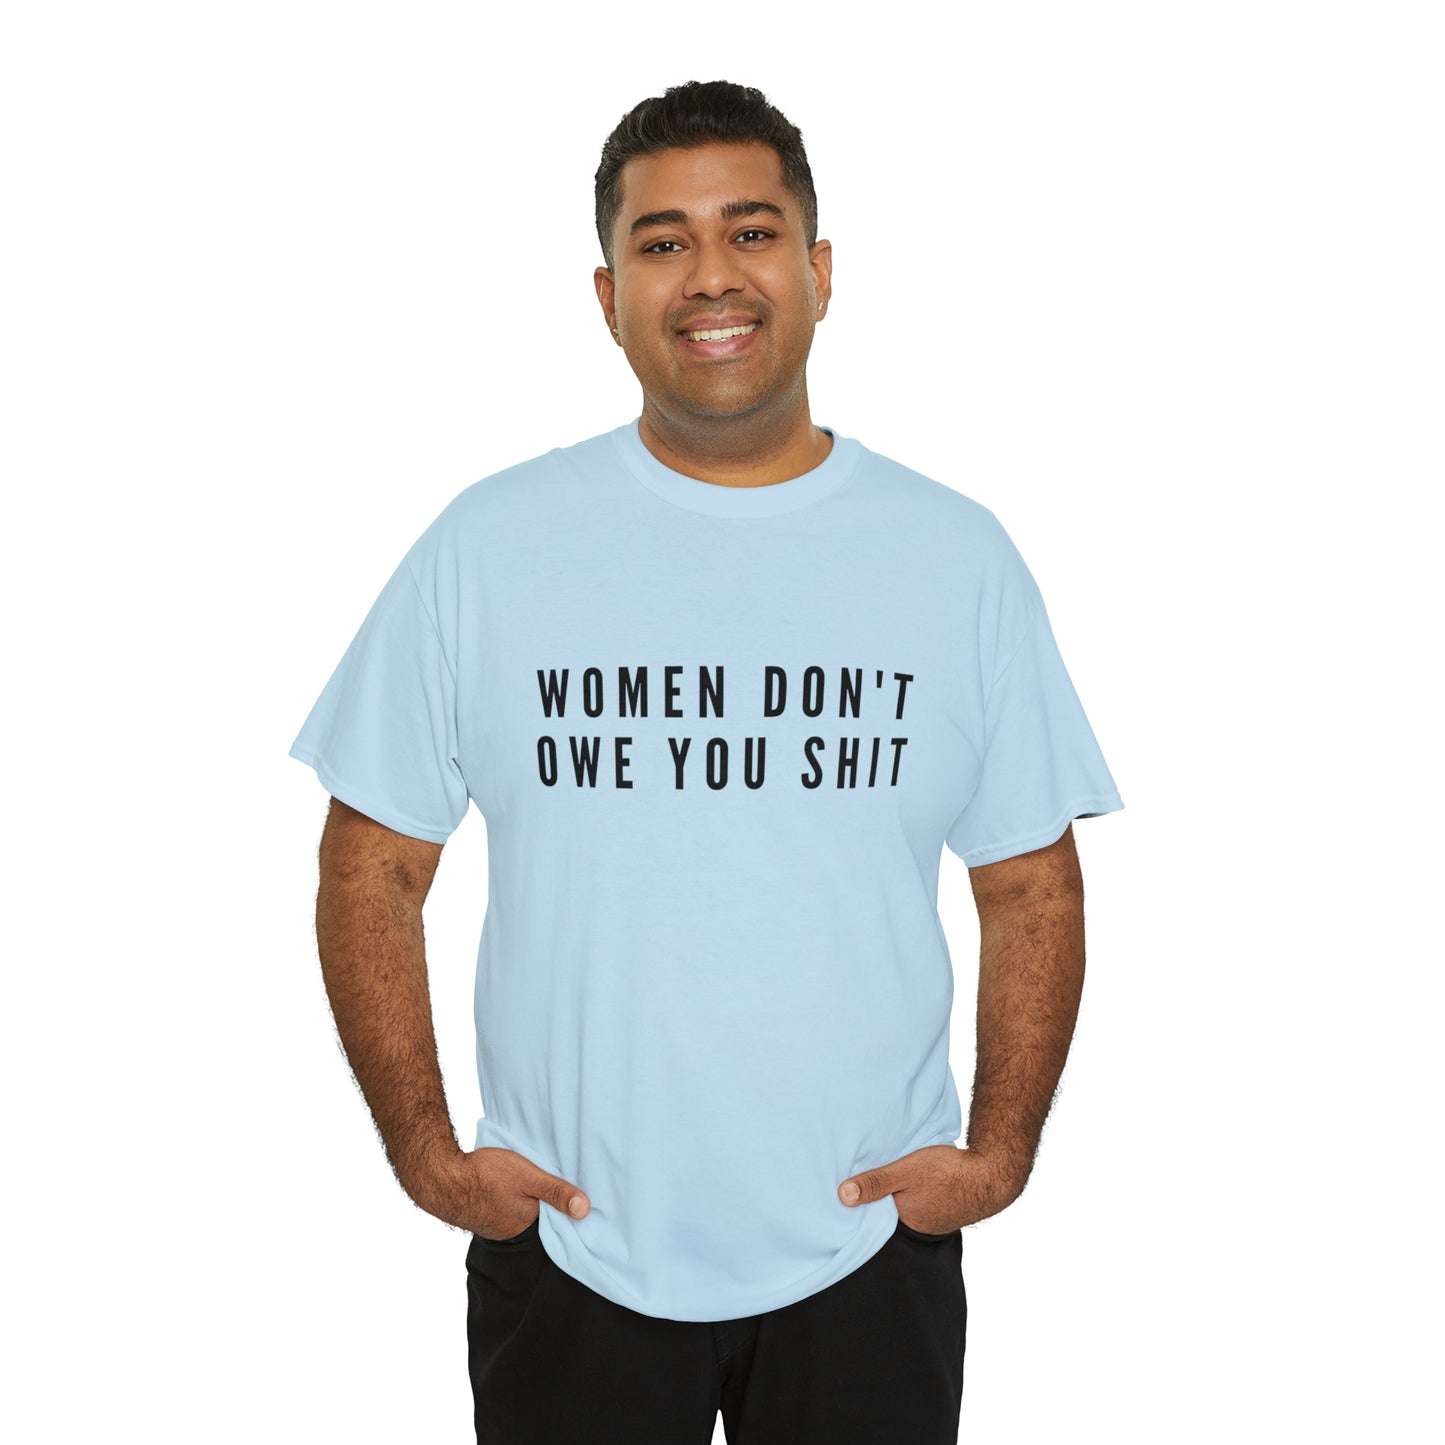 WOMEN DON'T OWE YOU SHIT TEE